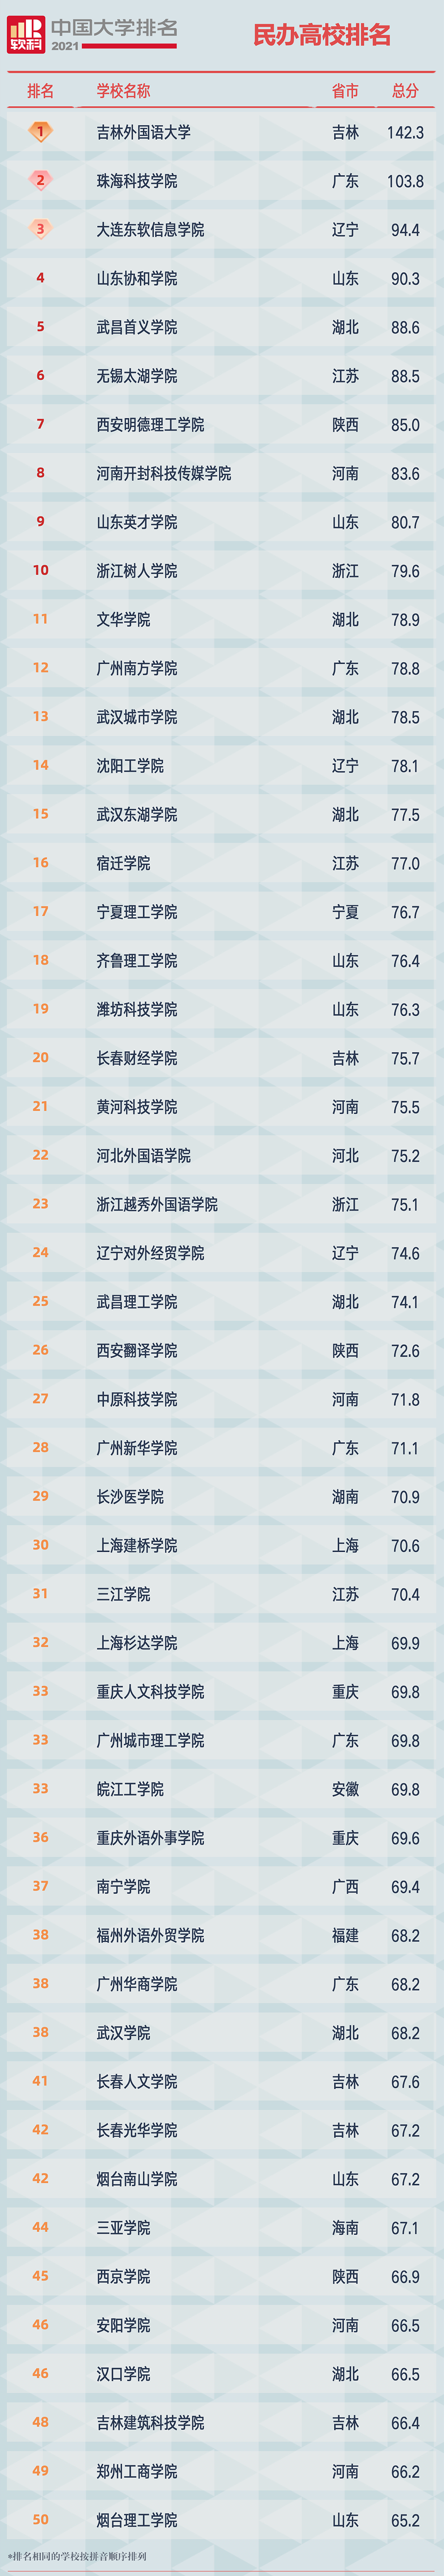 2021软科中国民办高校排名榜单